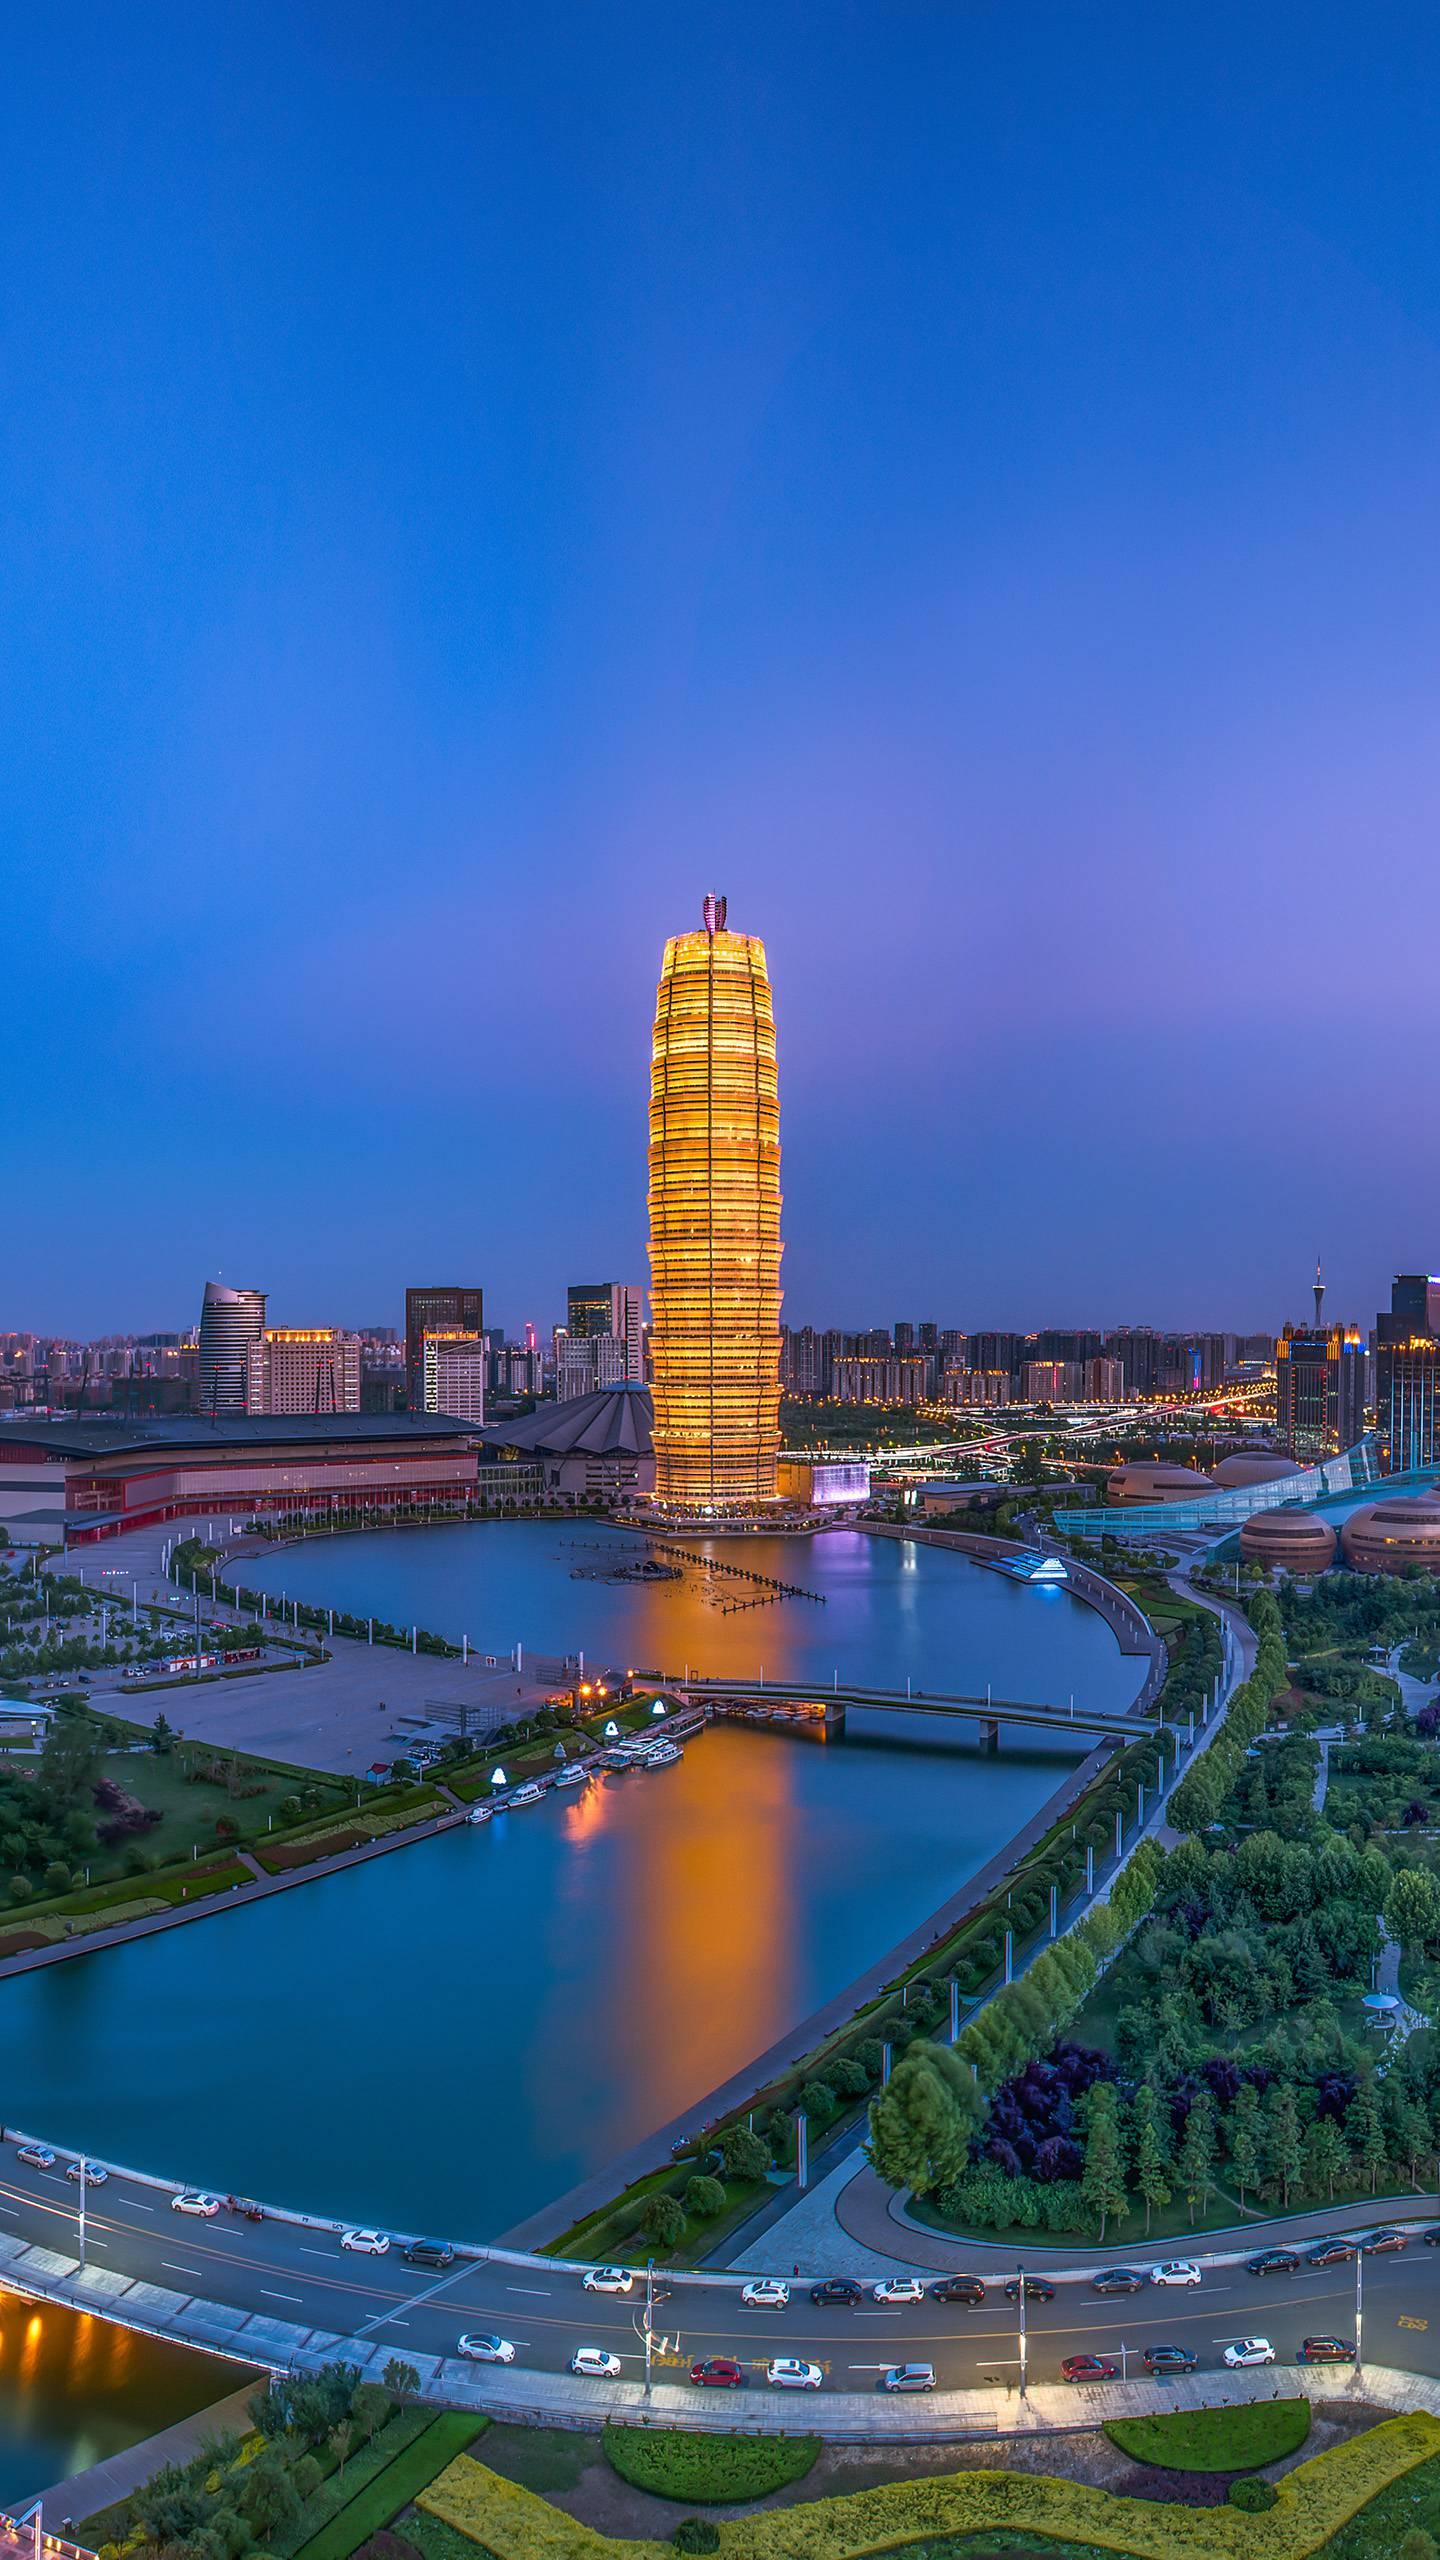 郑州是河南省的省会,是中原地区的重要城市